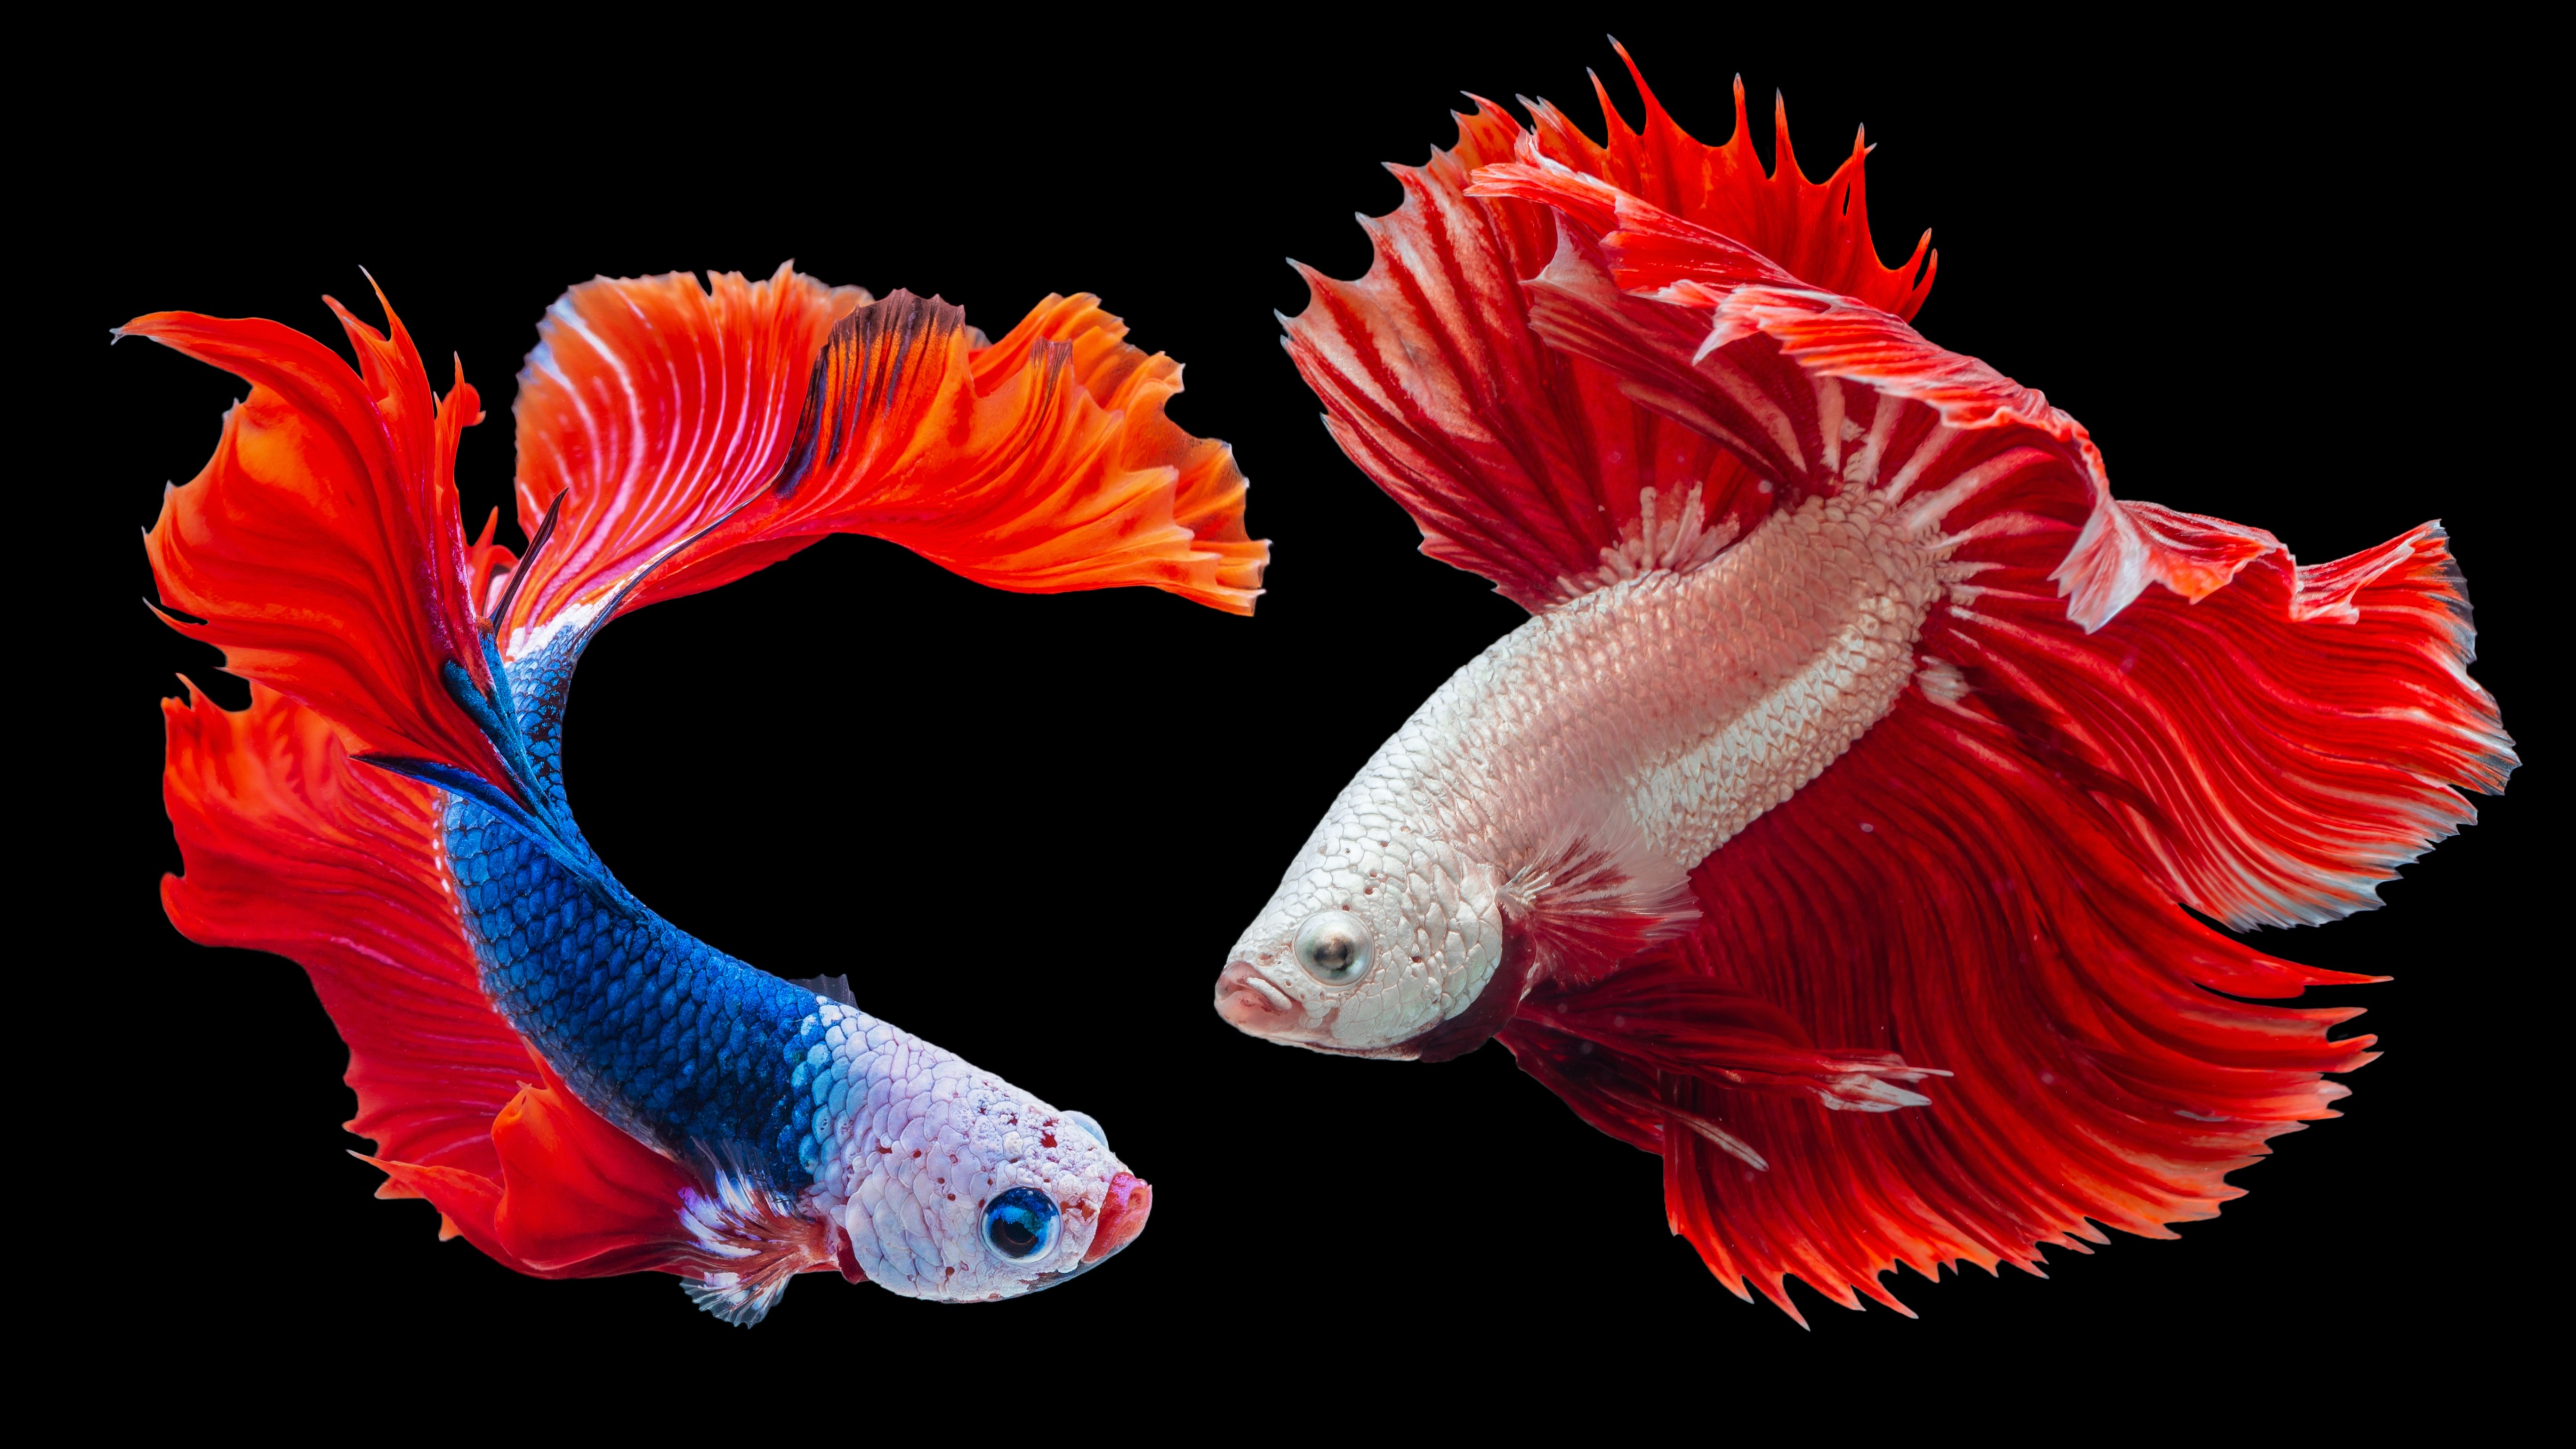 Top 5 LARGE Fish For Your Aquarium 